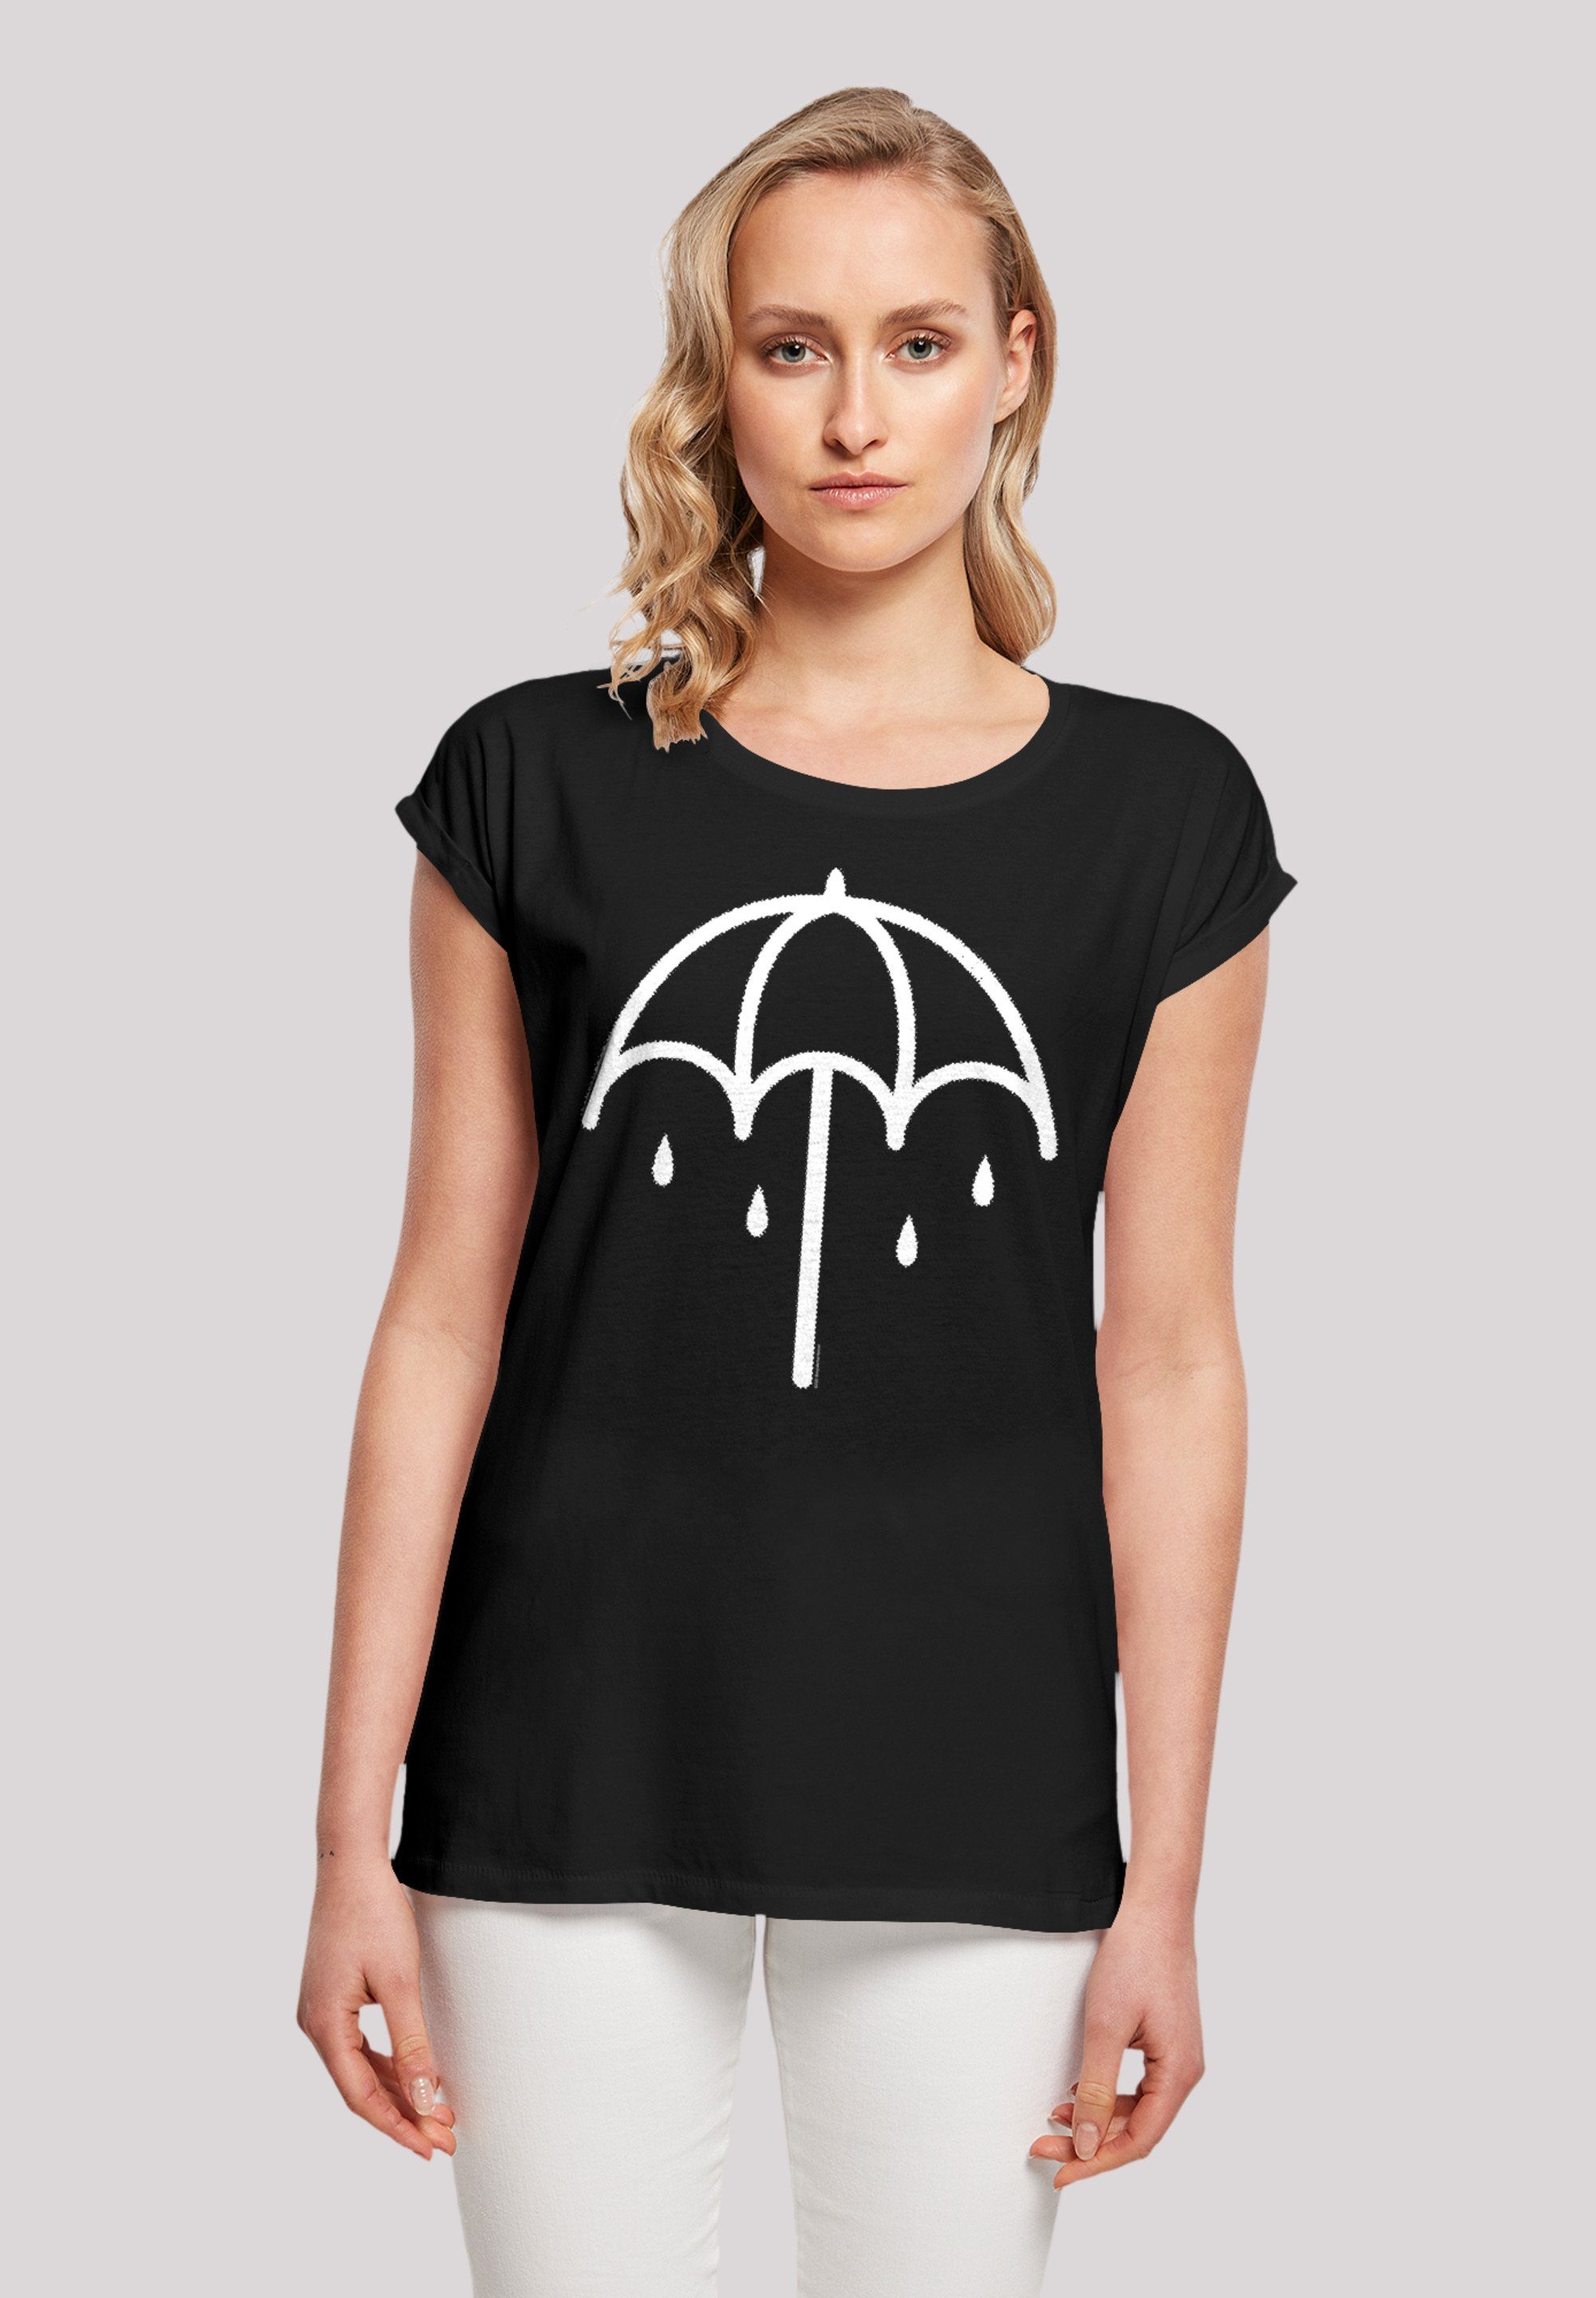 F4NT4STIC T-Shirt DARK weicher Sehr BMTH Band Umbrella 2 Premium hohem Rock- Baumwollstoff Musik, mit Qualität, Tragekomfort Band, Metal